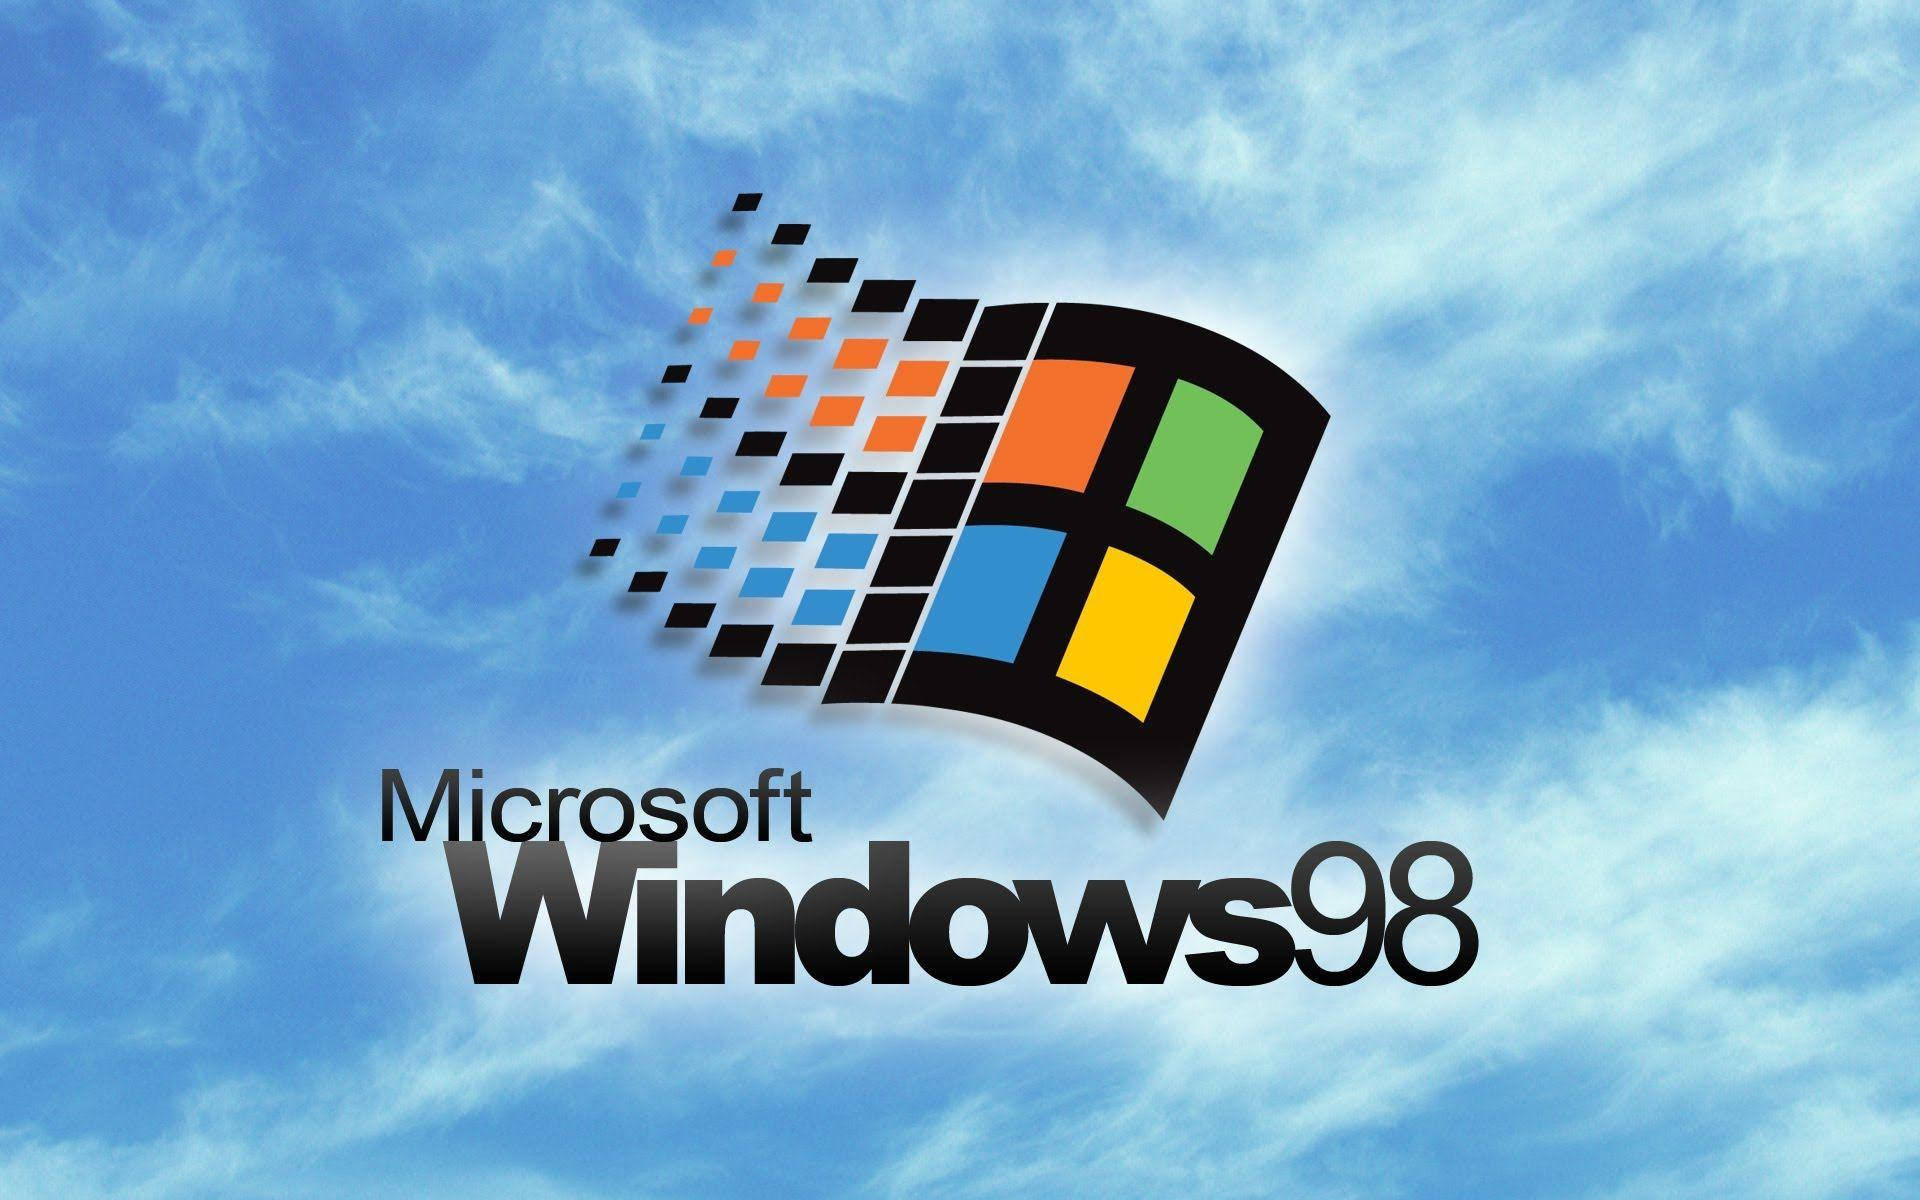 Windows98, Byggt För 90-talet. Wallpaper